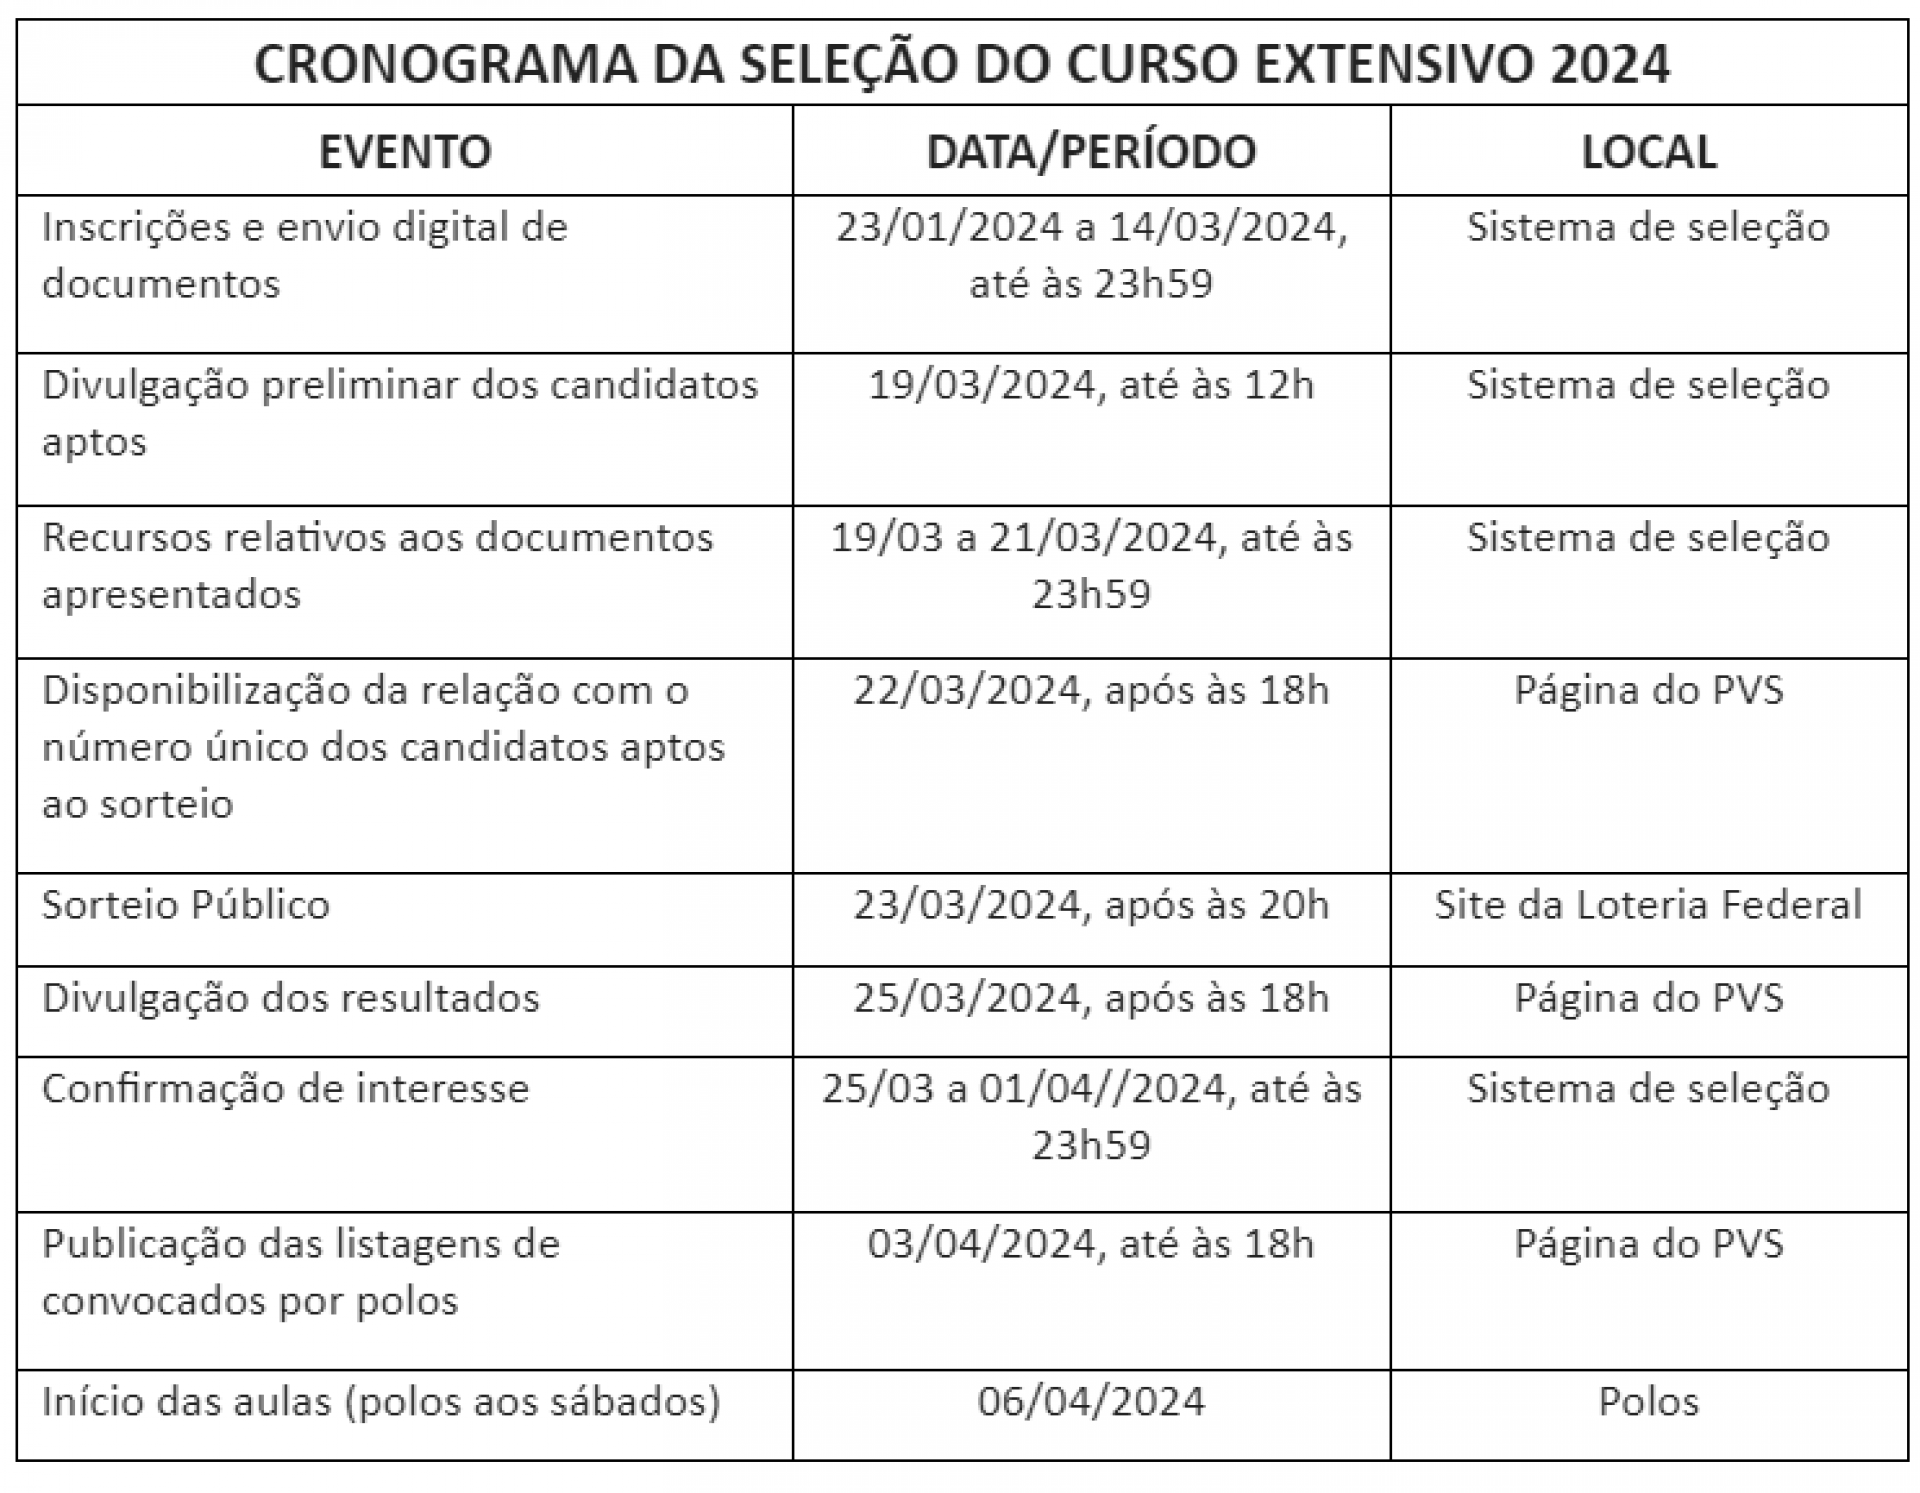 CRONOGRAMA DA SELEÇÃO DO CURSO EXTENSIVO 2024 - Divulgação